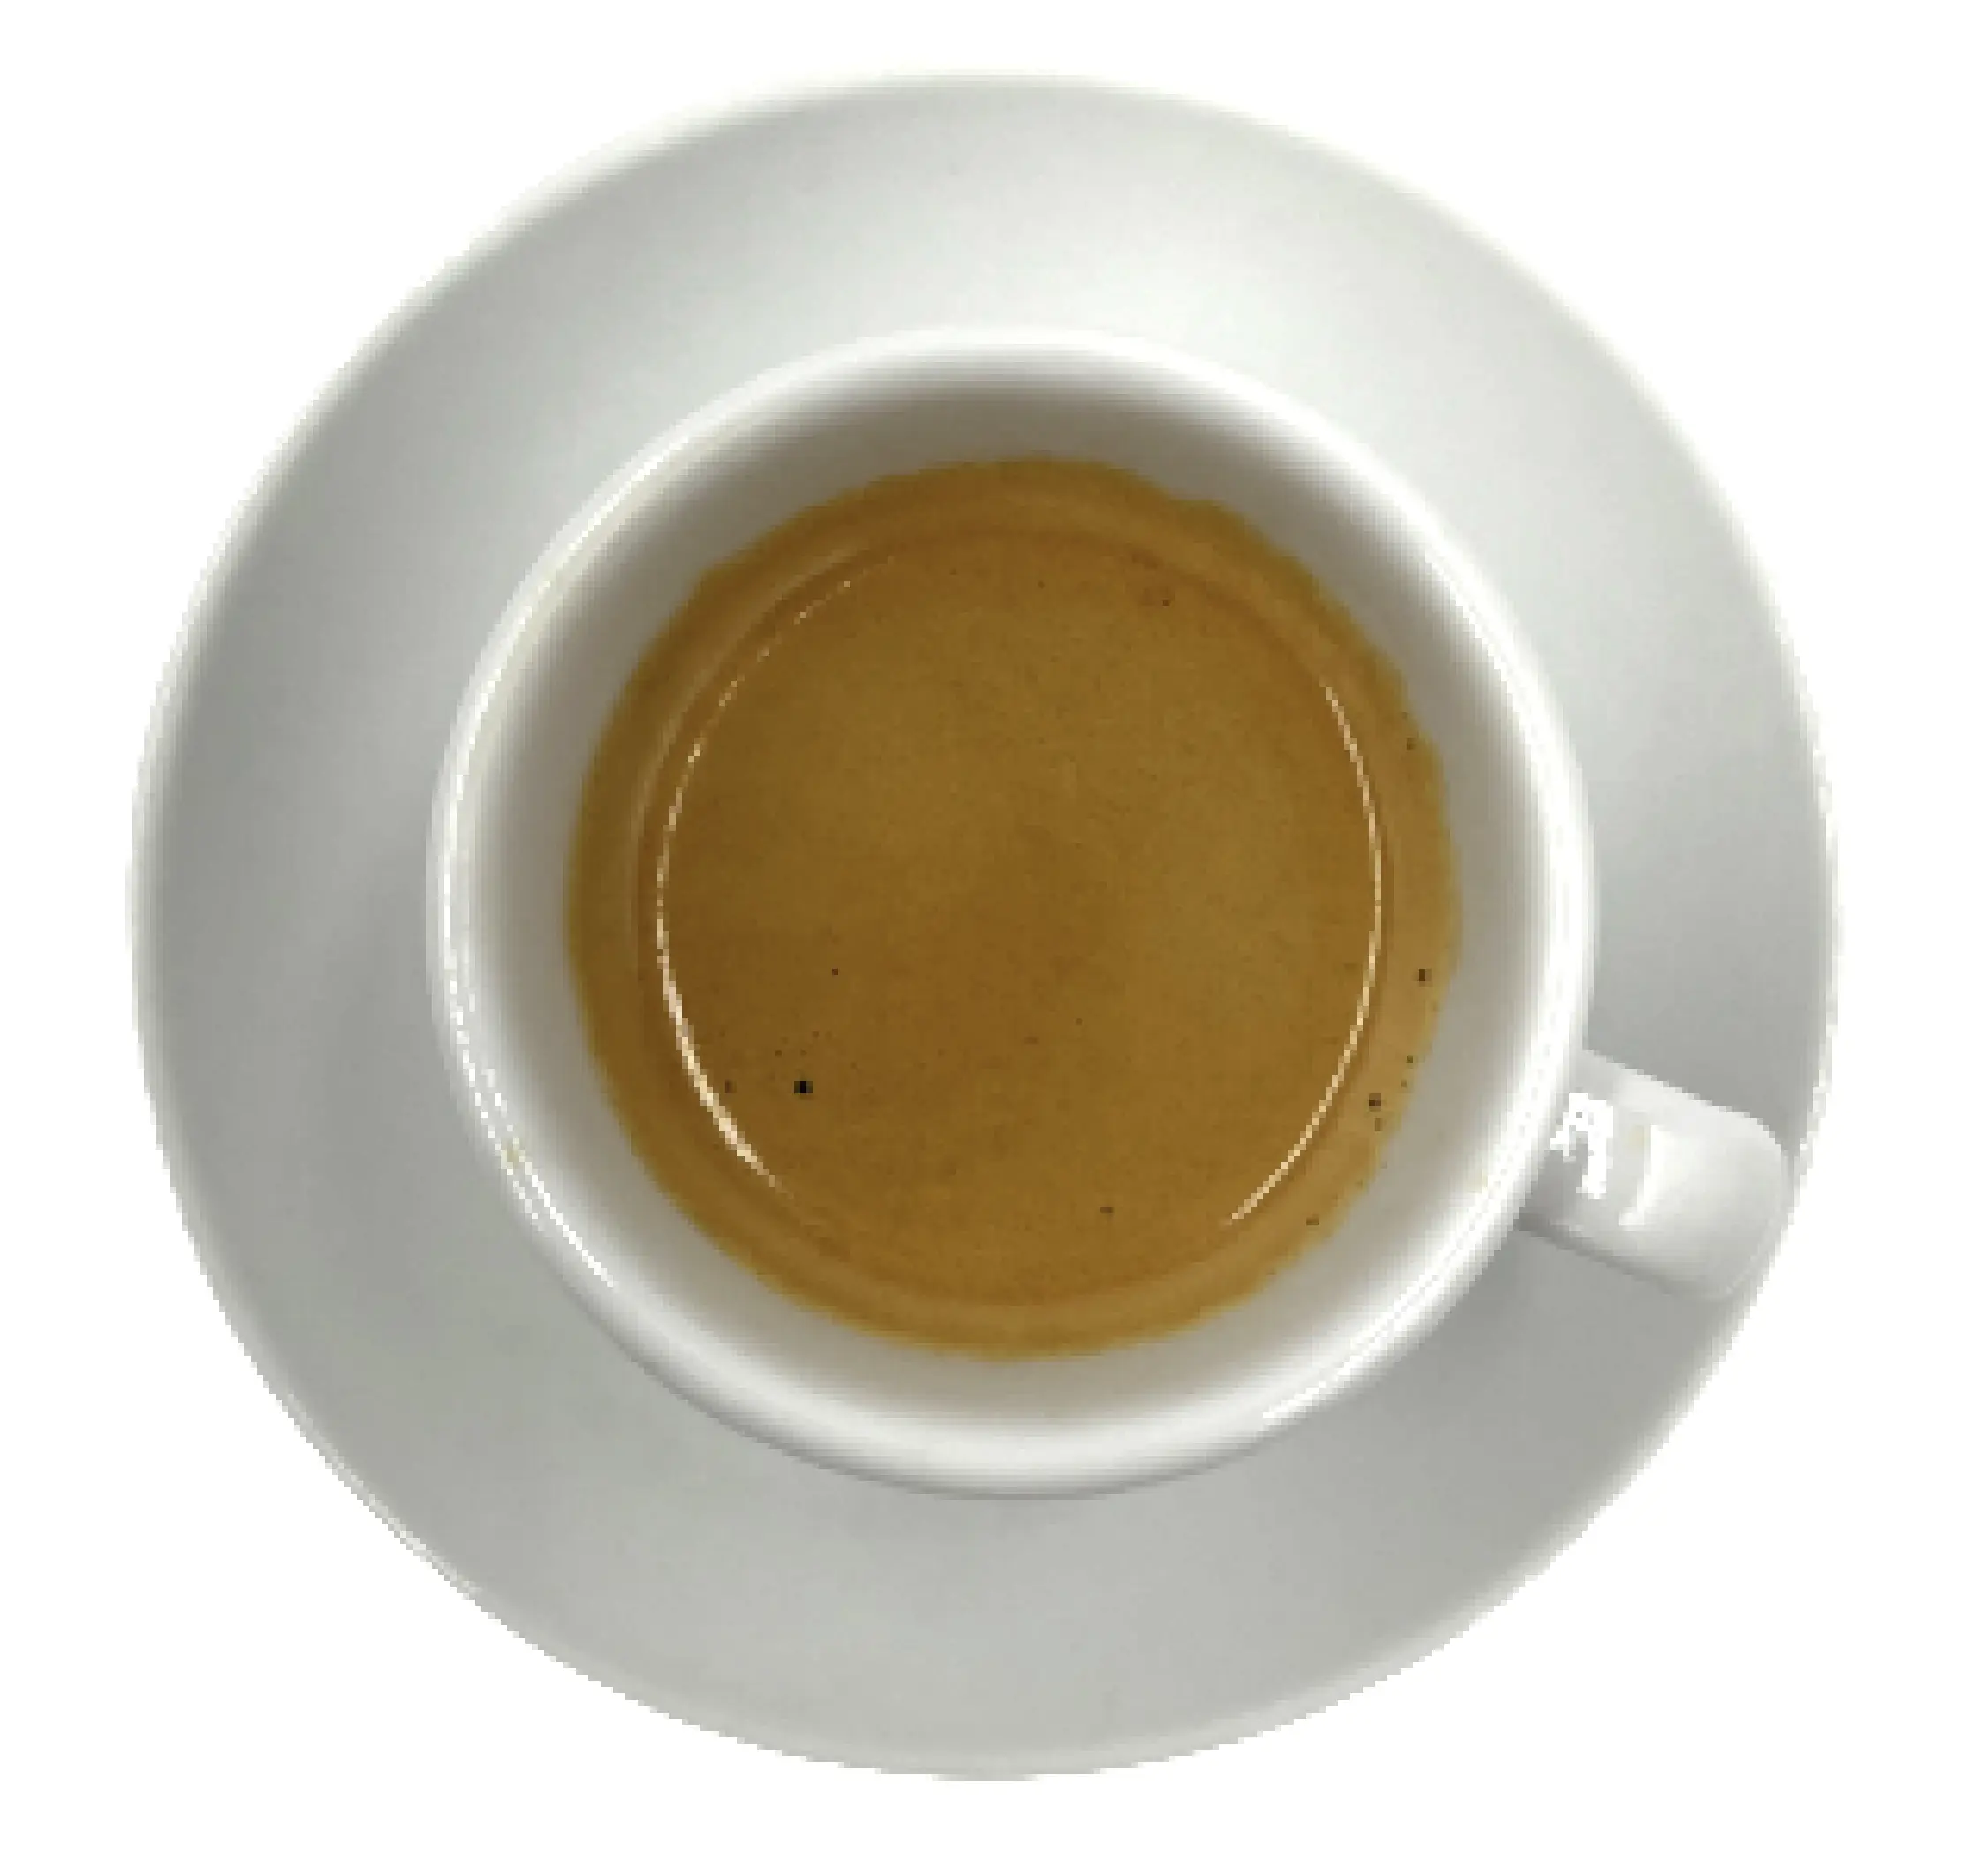 Brazil » et « Colombia », 2 nouveaux cafés bios par Nespresso